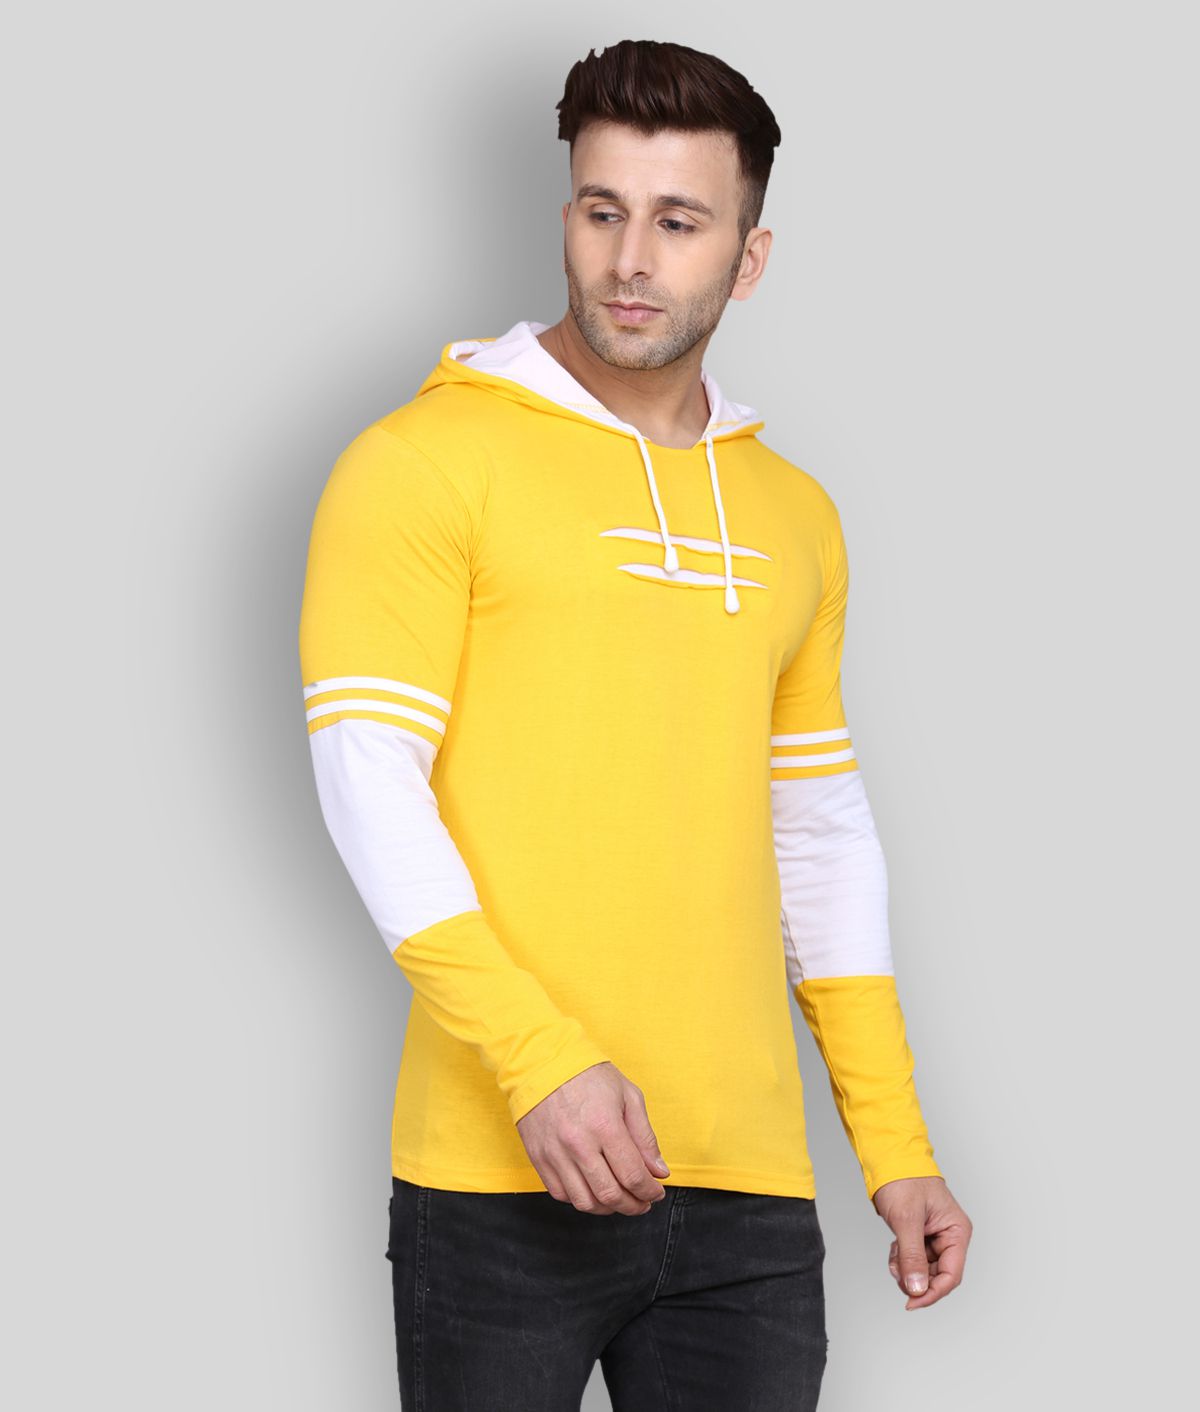     			SIDKRT - Yellow Cotton Regular Fit Men's T-Shirt ( Pack of 1 )